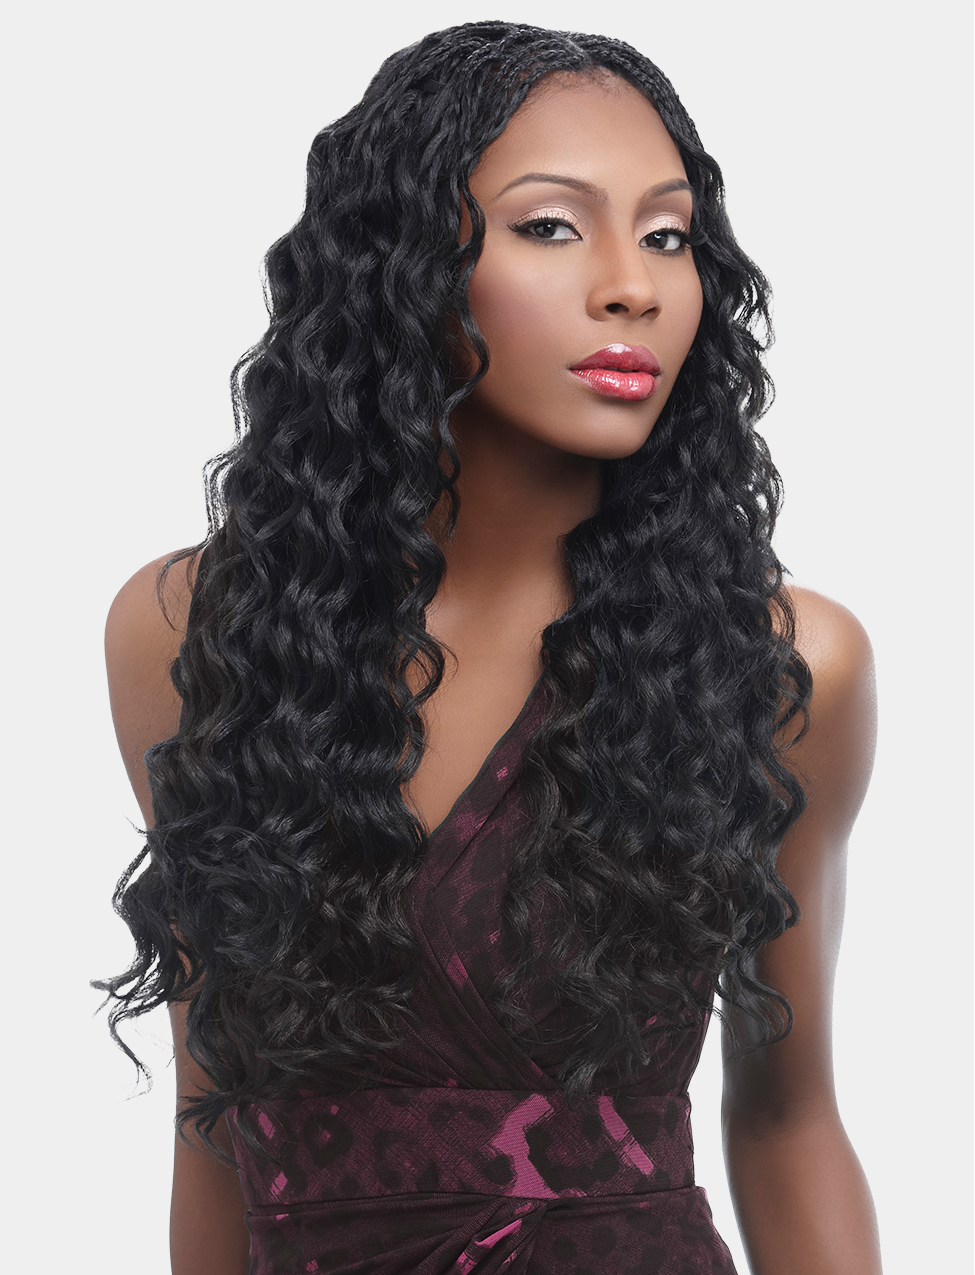 Harlem 125 Synthetic Hair Kima Braids